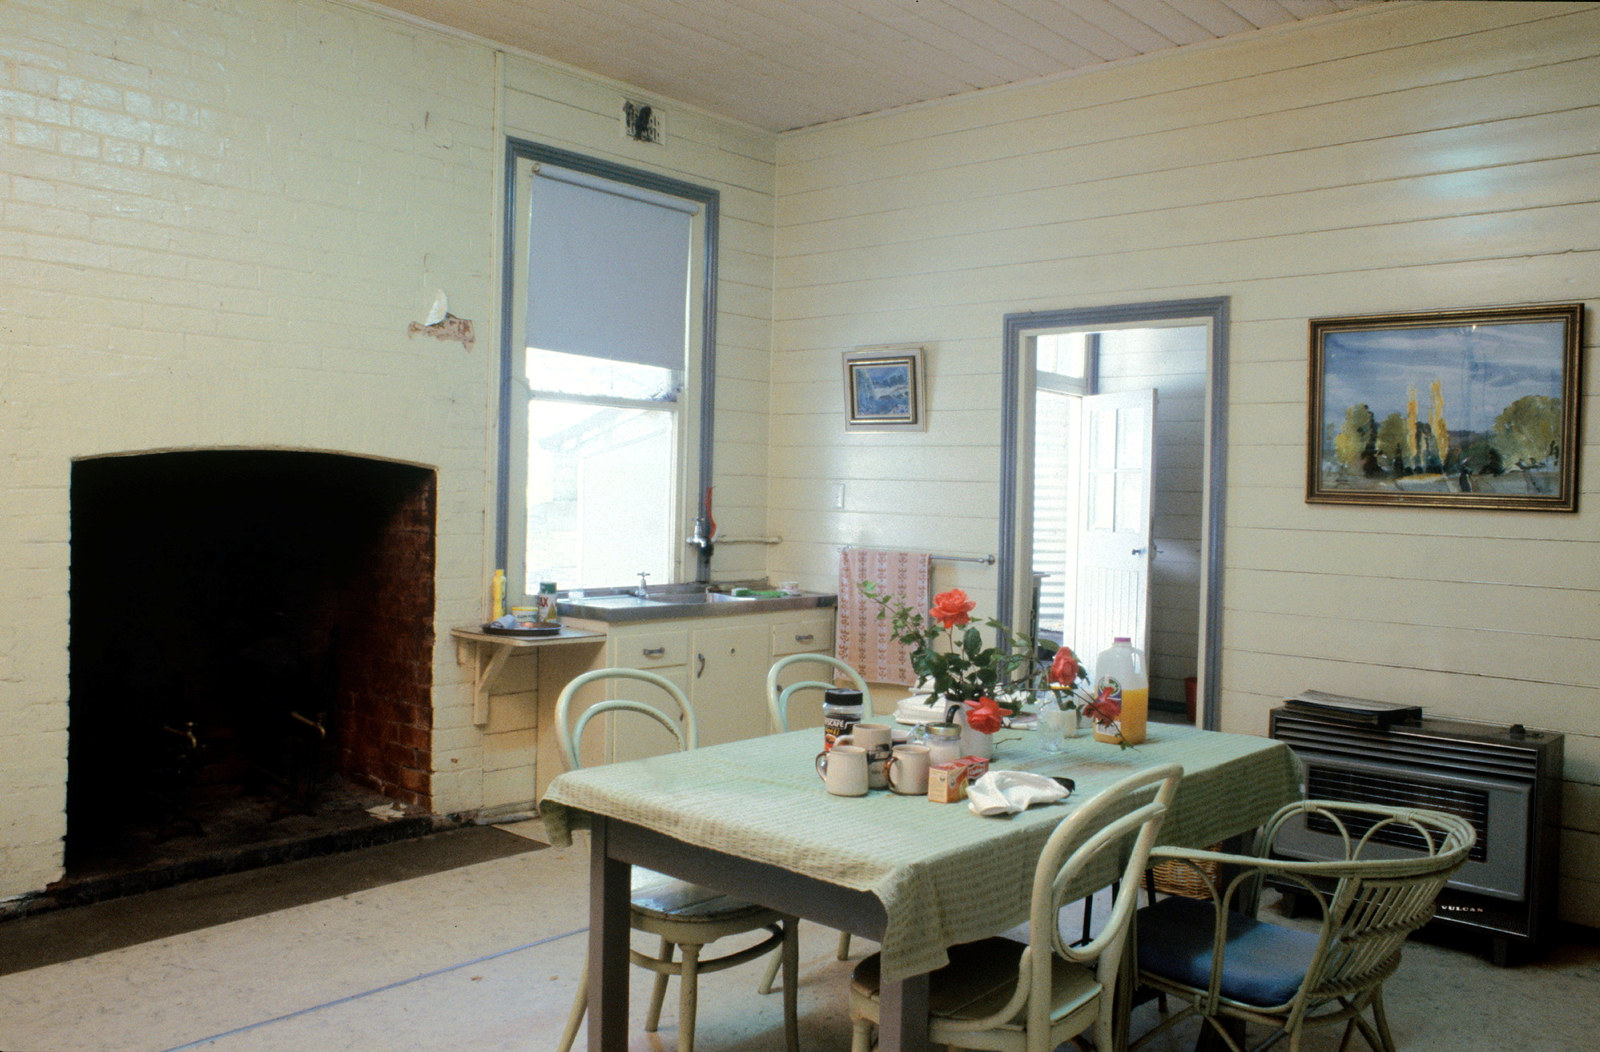 The kitchen at Europambela, Walcha, NSW